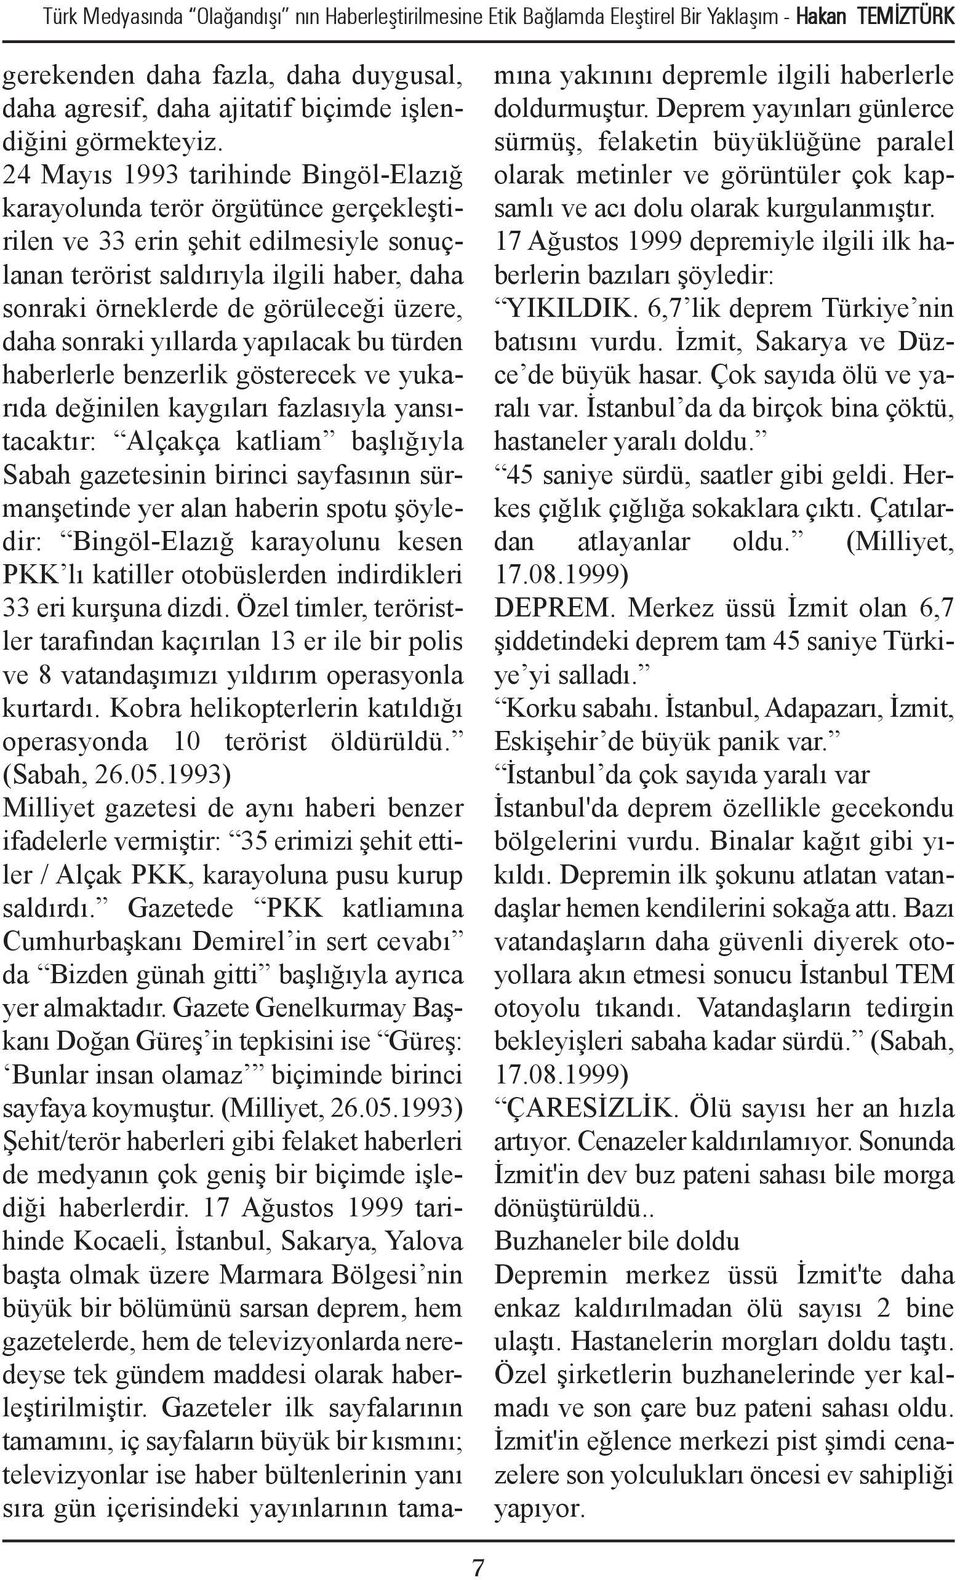 24 Mayıs 1993 tarihinde Bingöl-Elazığ karayolunda terör örgütünce gerçekleştirilen ve 33 erin şehit edilmesiyle sonuçlanan terörist saldırıyla ilgili haber, daha sonraki örneklerde de görüleceği